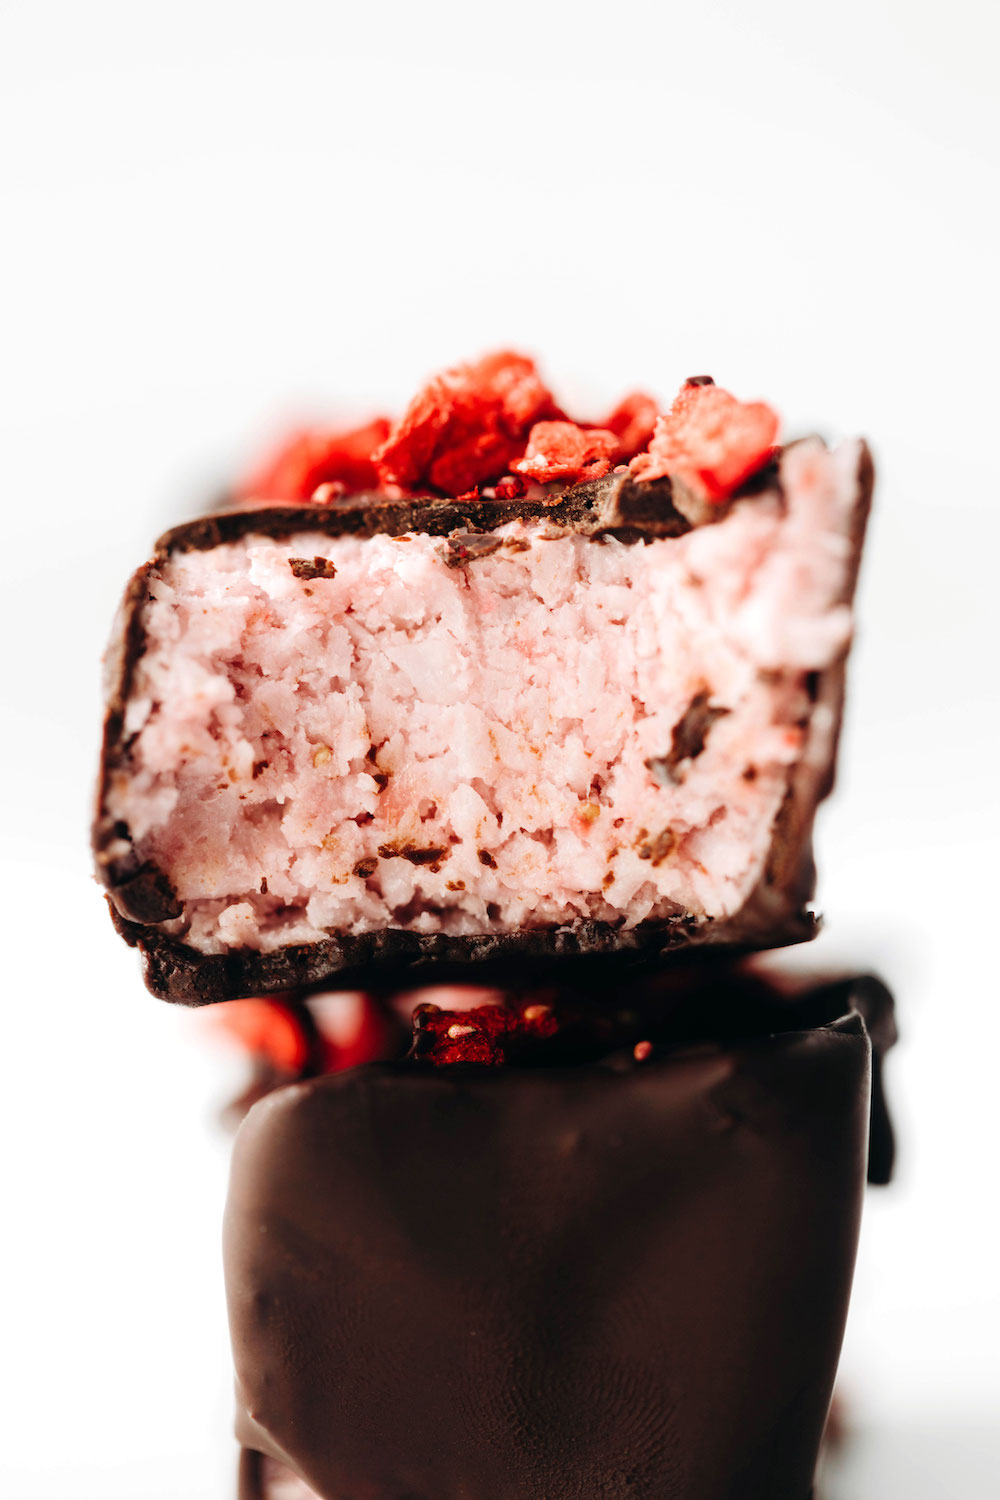 Chocolate Covered Strawberry Bars (vegan + paleo)